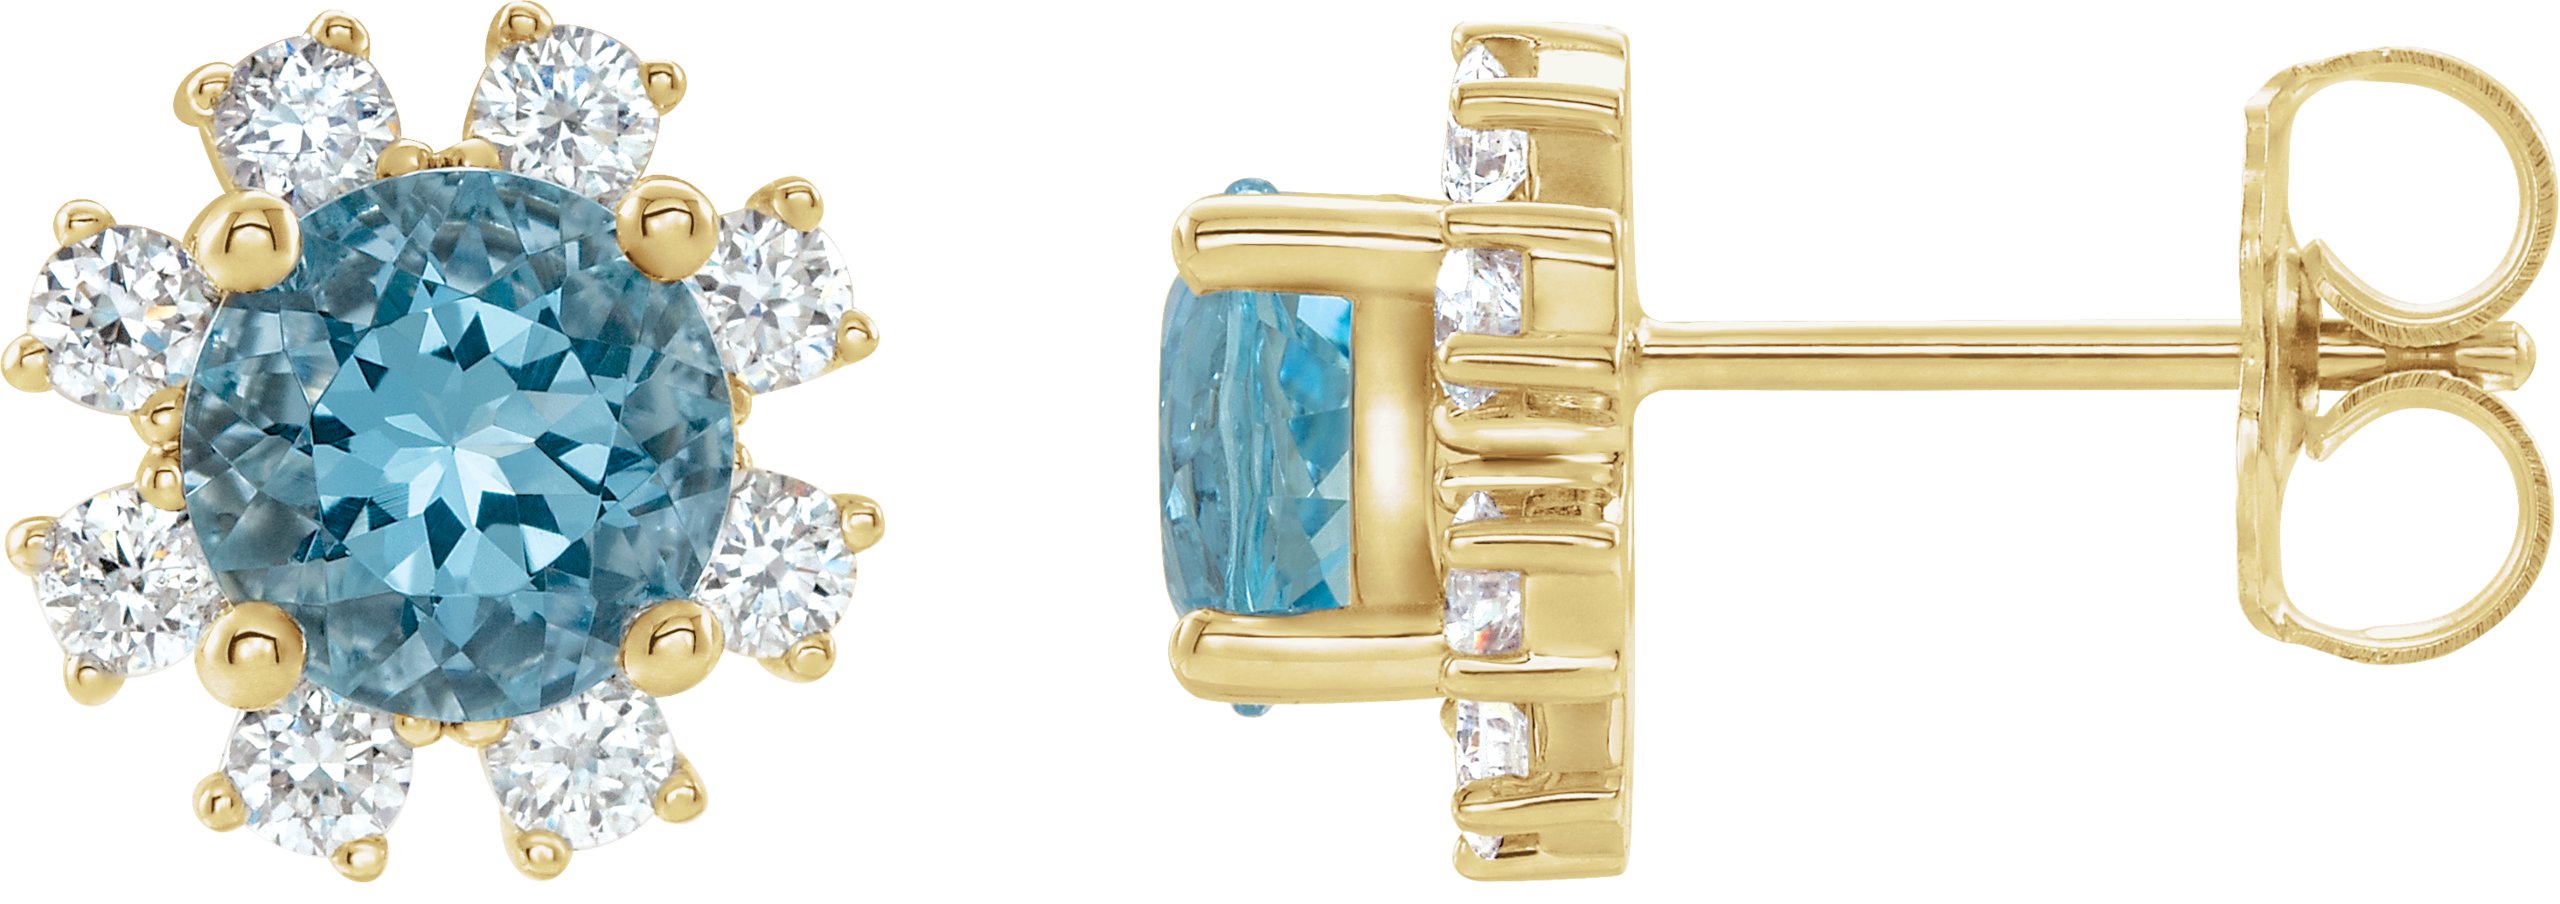 14K Yellow Blue Zircon & 1/2 CTW Diamond Earrings